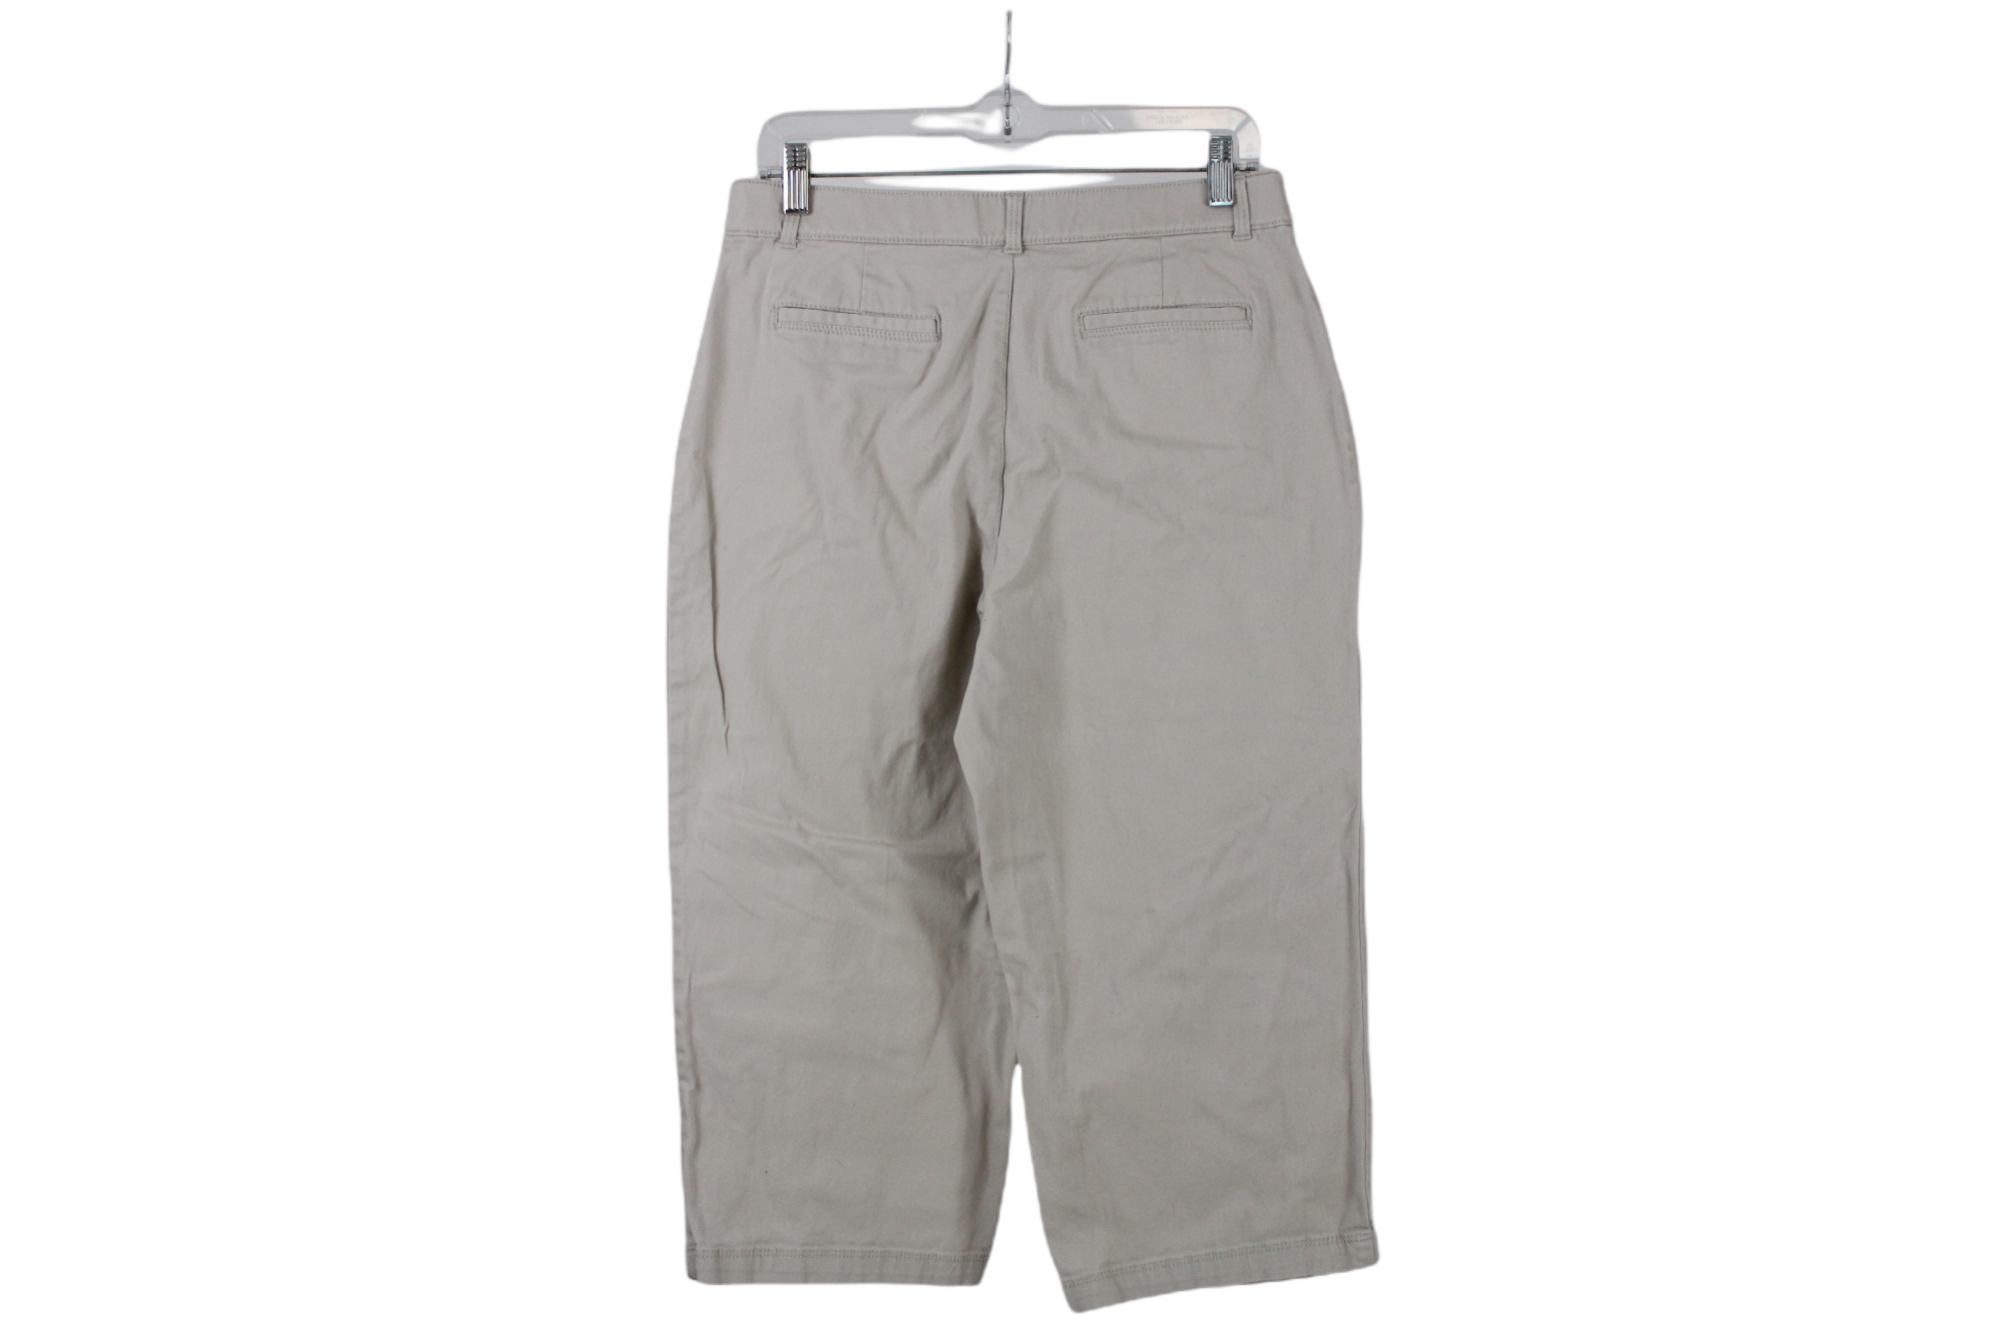 Gap Favorite Khaki Capri Pants Womens Size 6 Brown Twill Chino Cropped   eBay